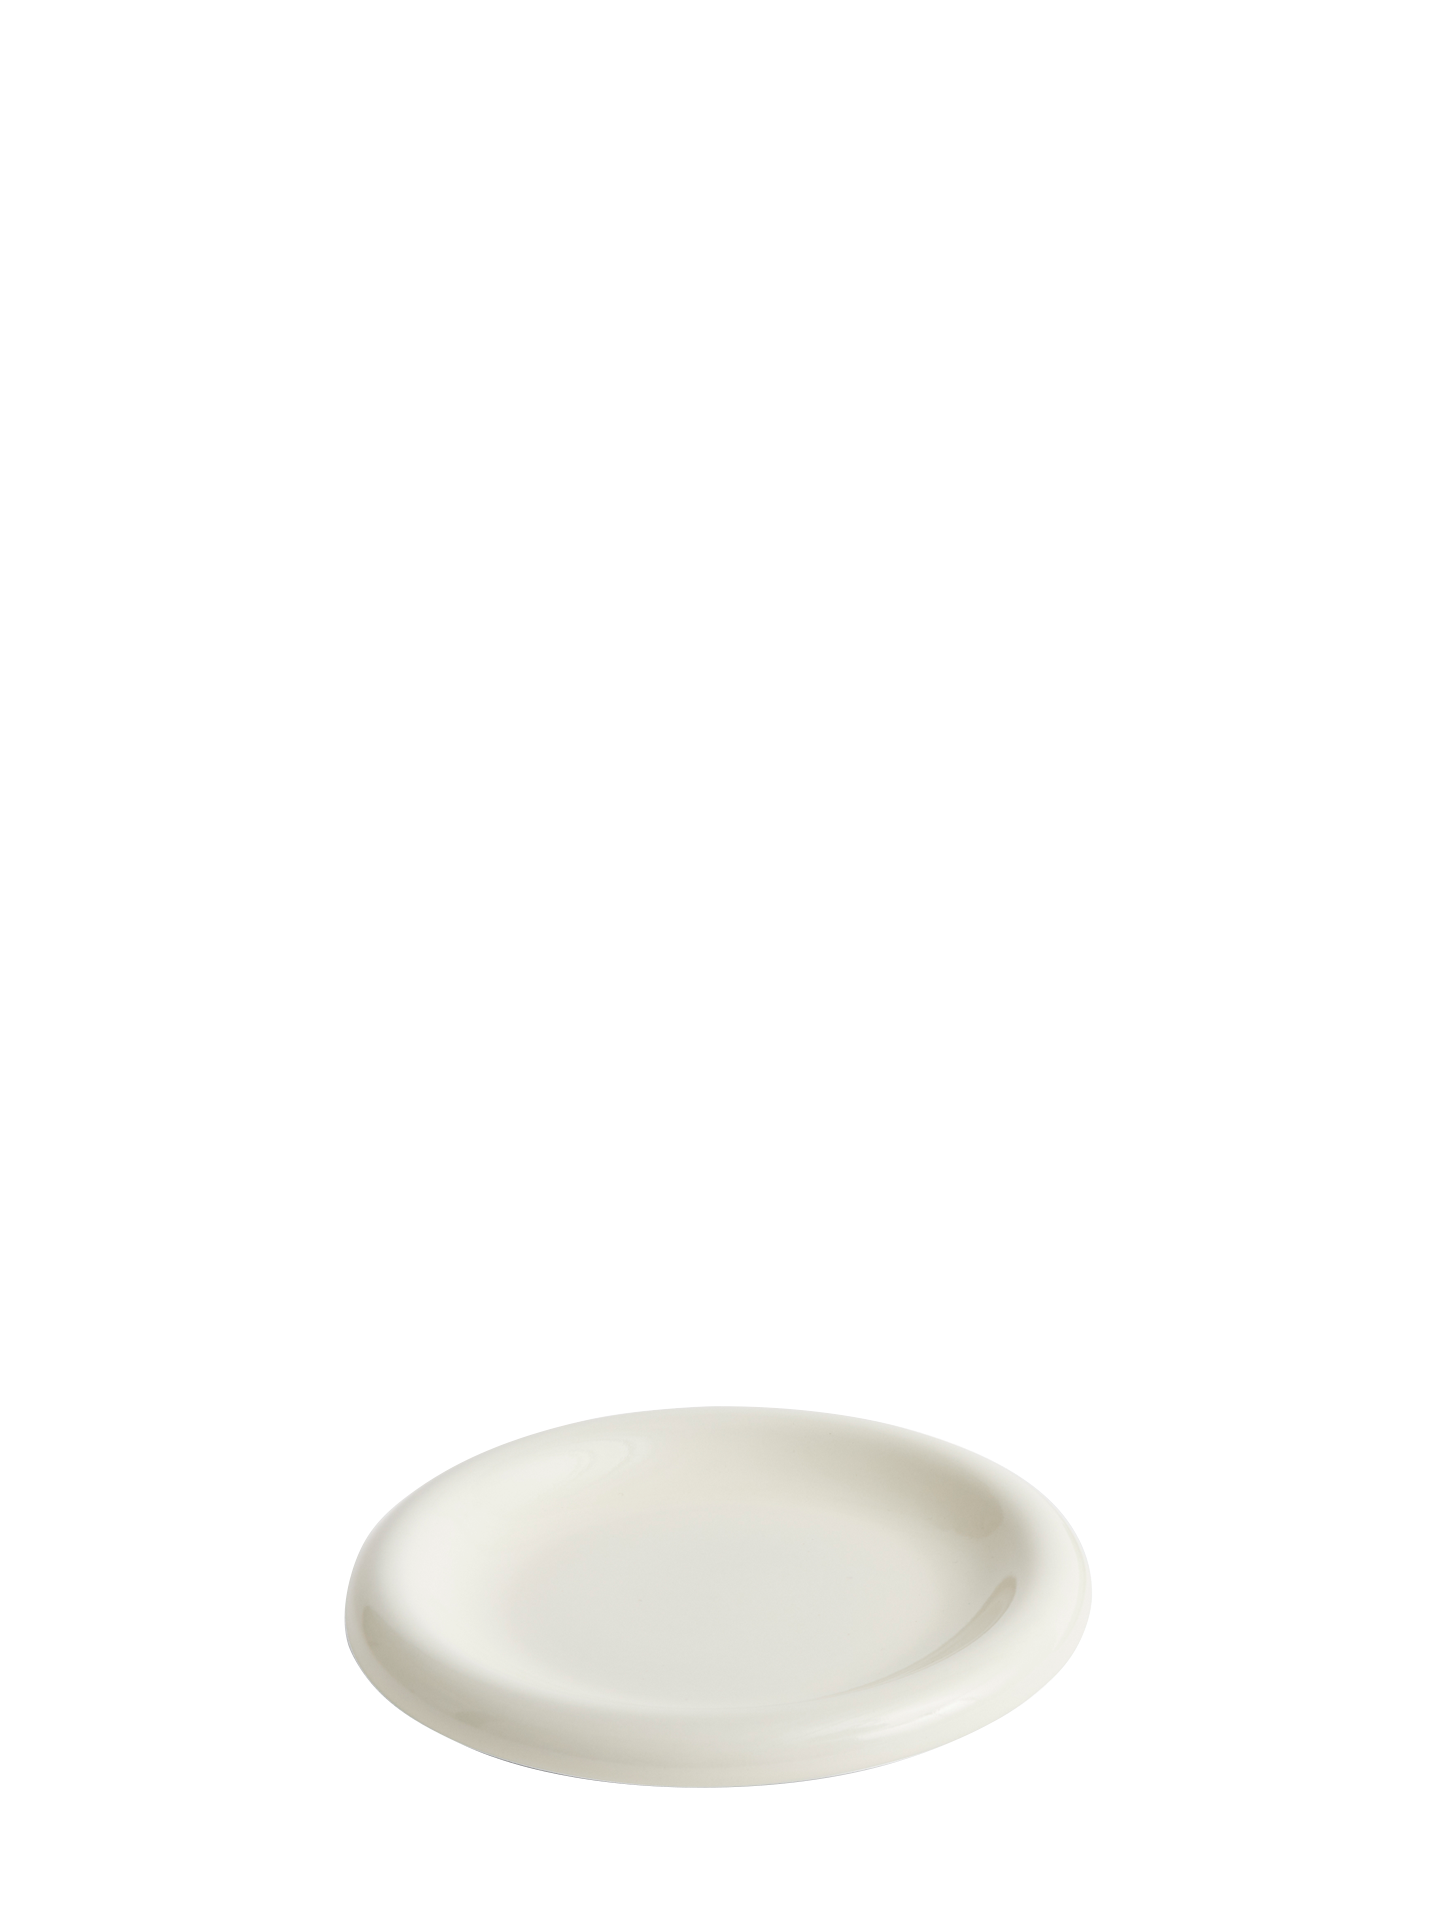 Barro Small Plate (Ø18), Off-white